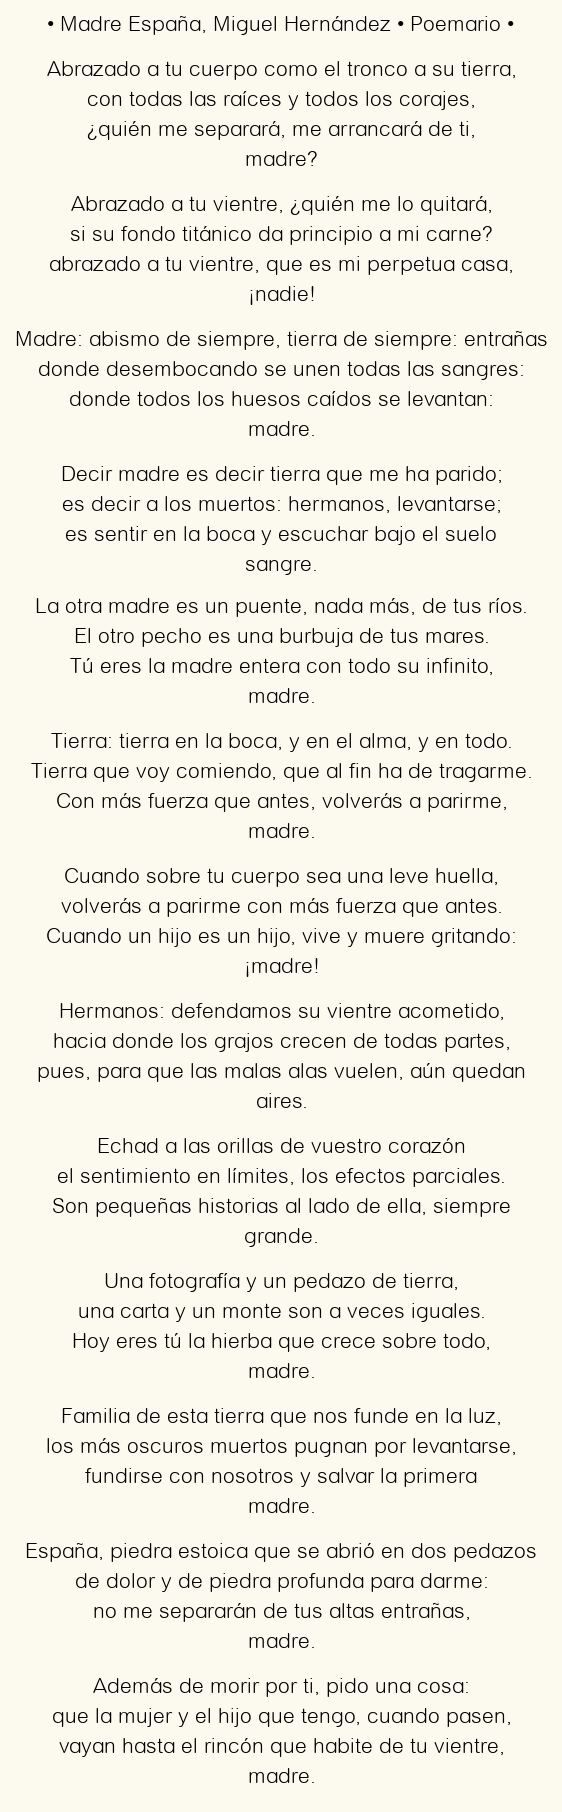 Imagen con el poema Madre España, por Miguel Hernández